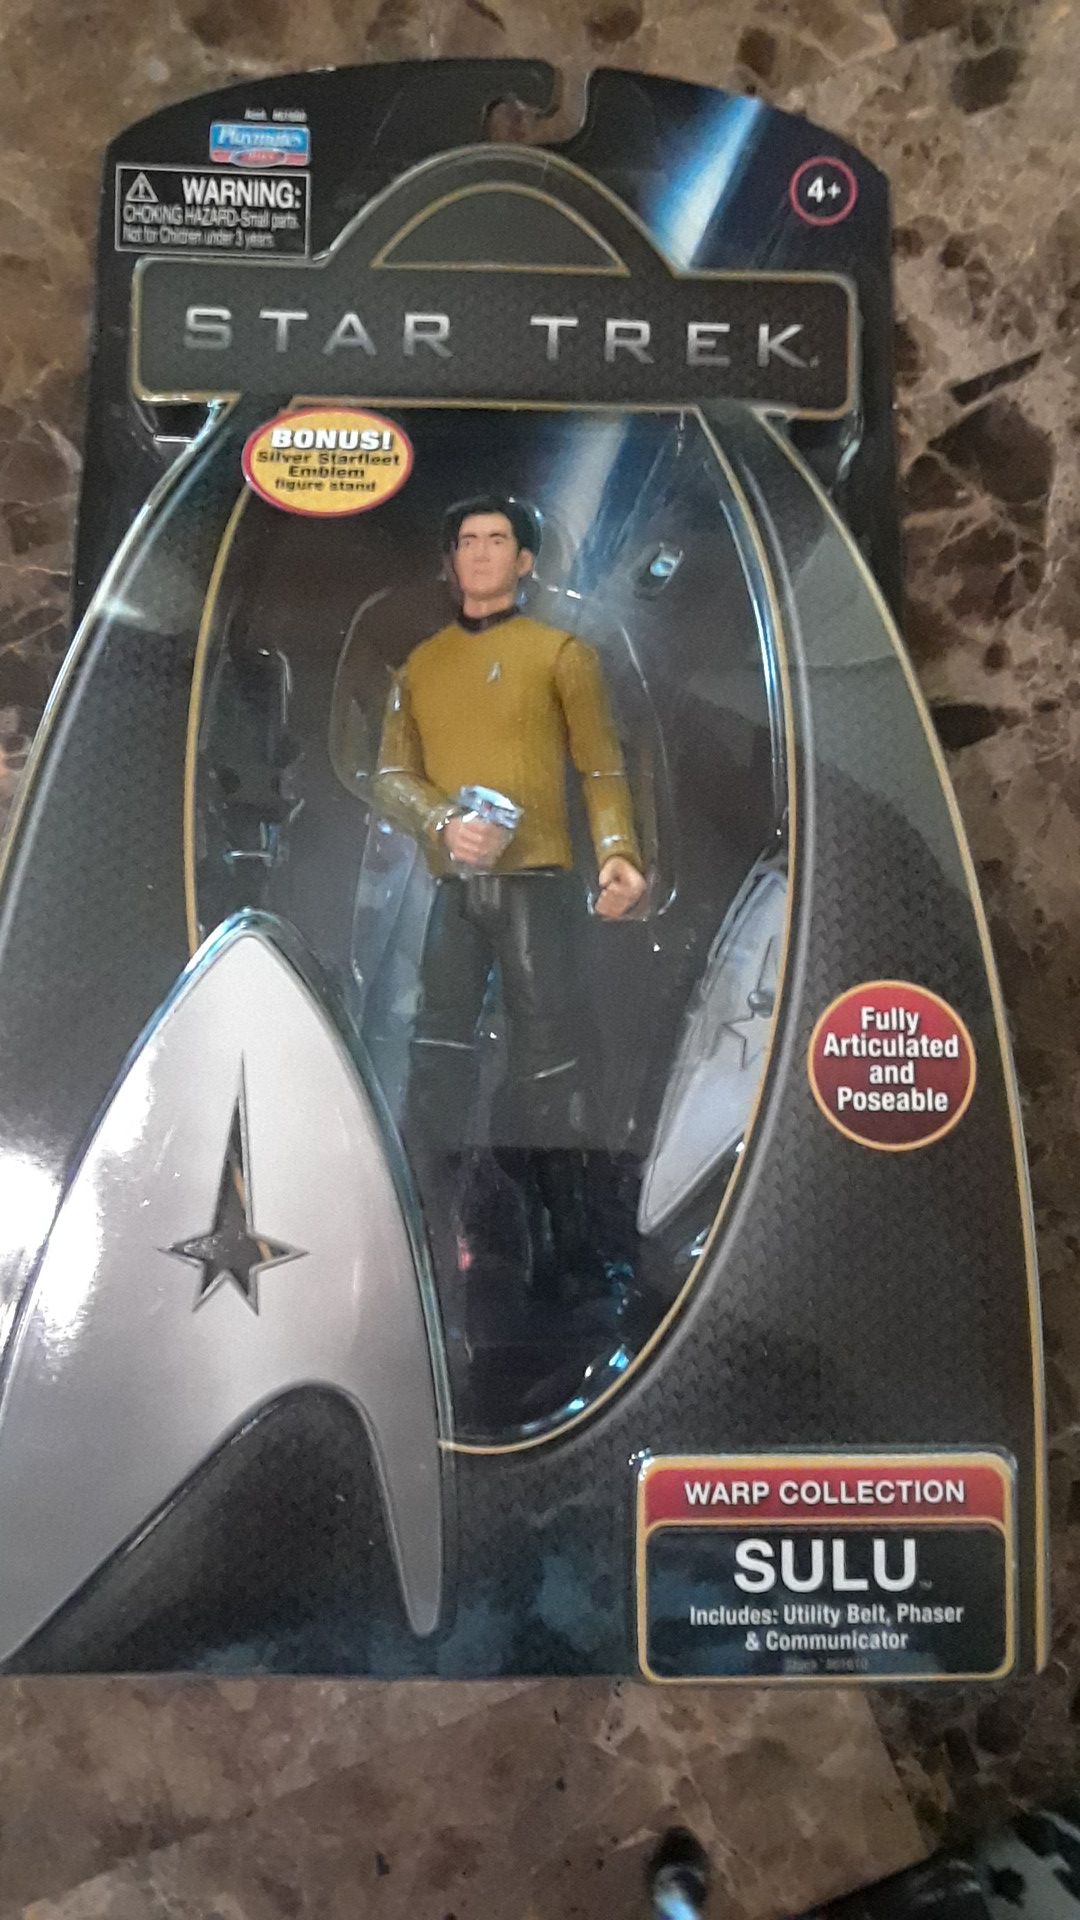 Star Trek Warp Collection figure